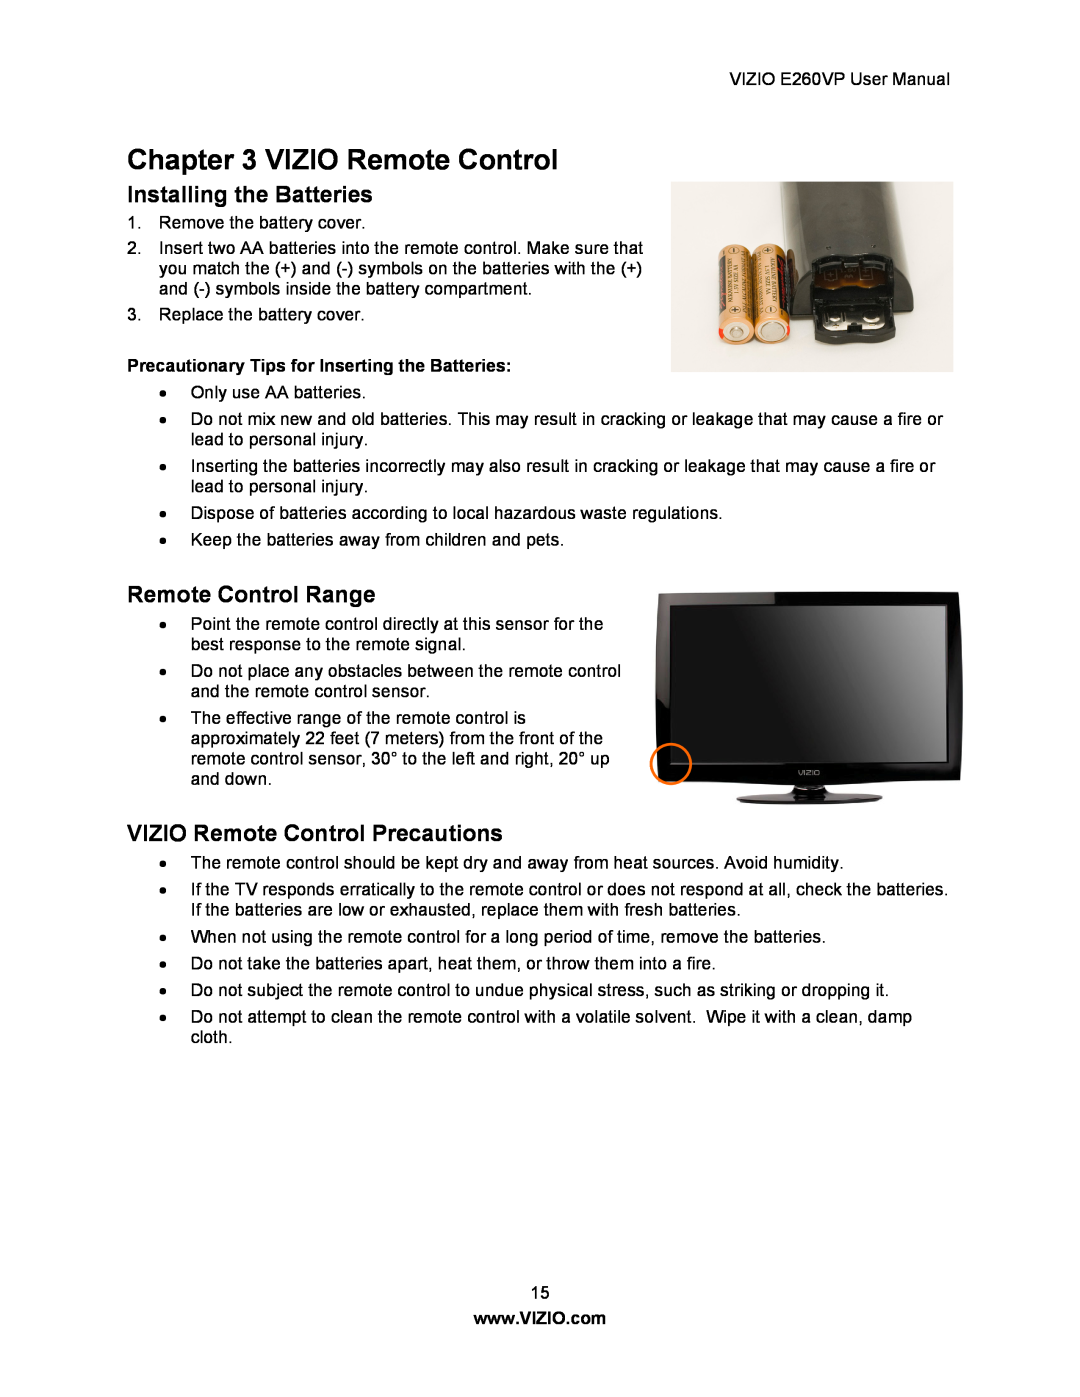 Vizio E260VP user manual Installing the Batteries, Remote Control Range, VIZIO Remote Control Precautions 